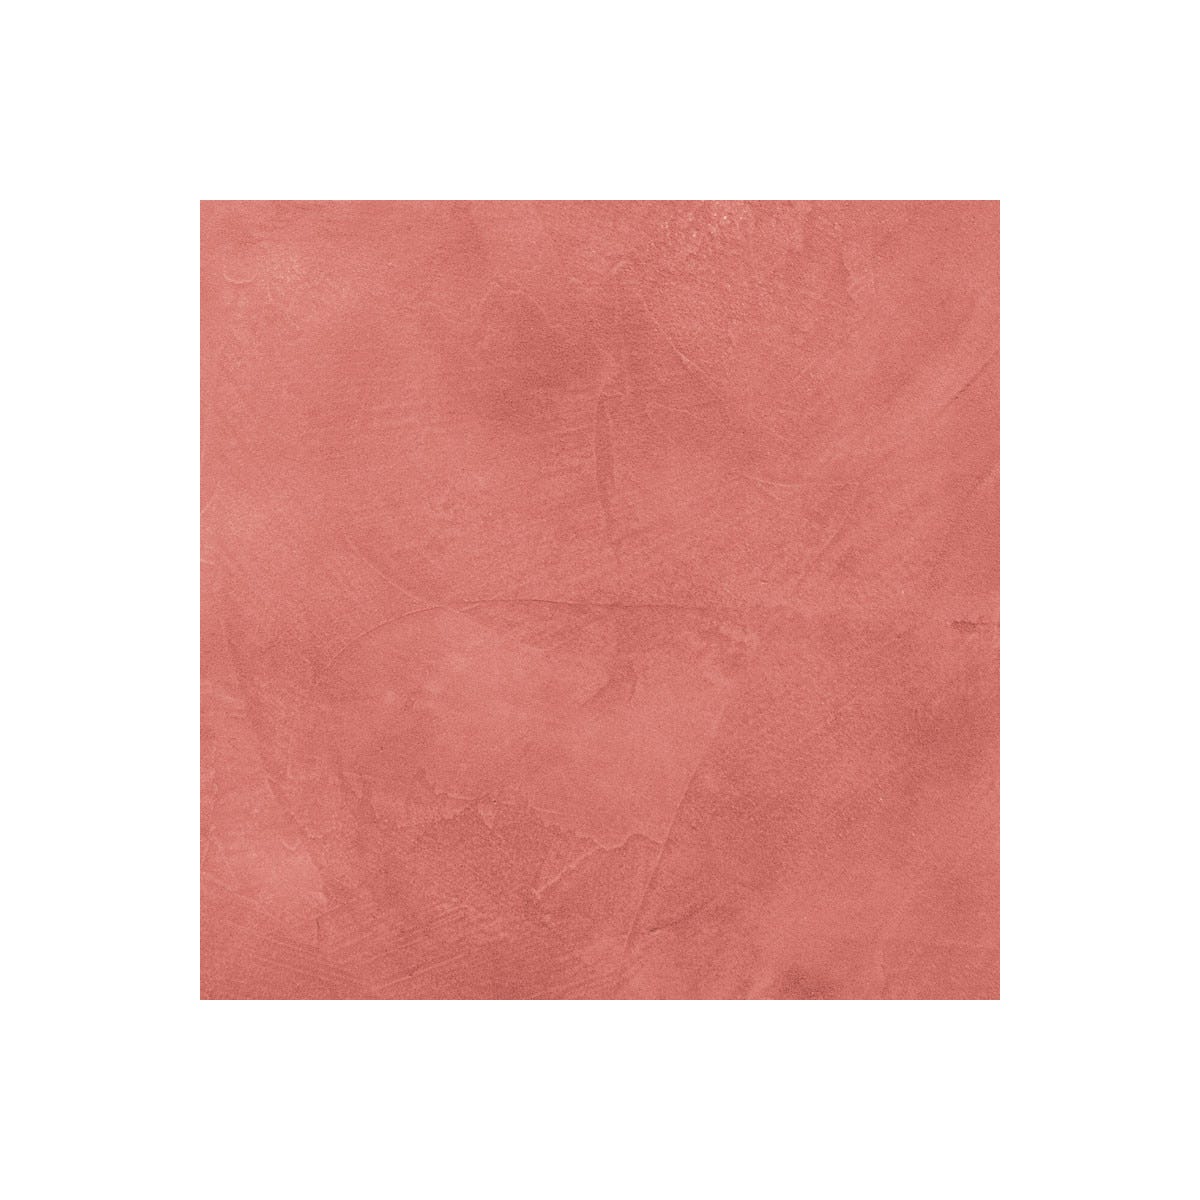 Béton Ciré Sol en - Primaire et vernis de finition inclus - 5 m² (en 2 couches) - Papaye Rose Orange - ARCANE INDUSTRIES 1